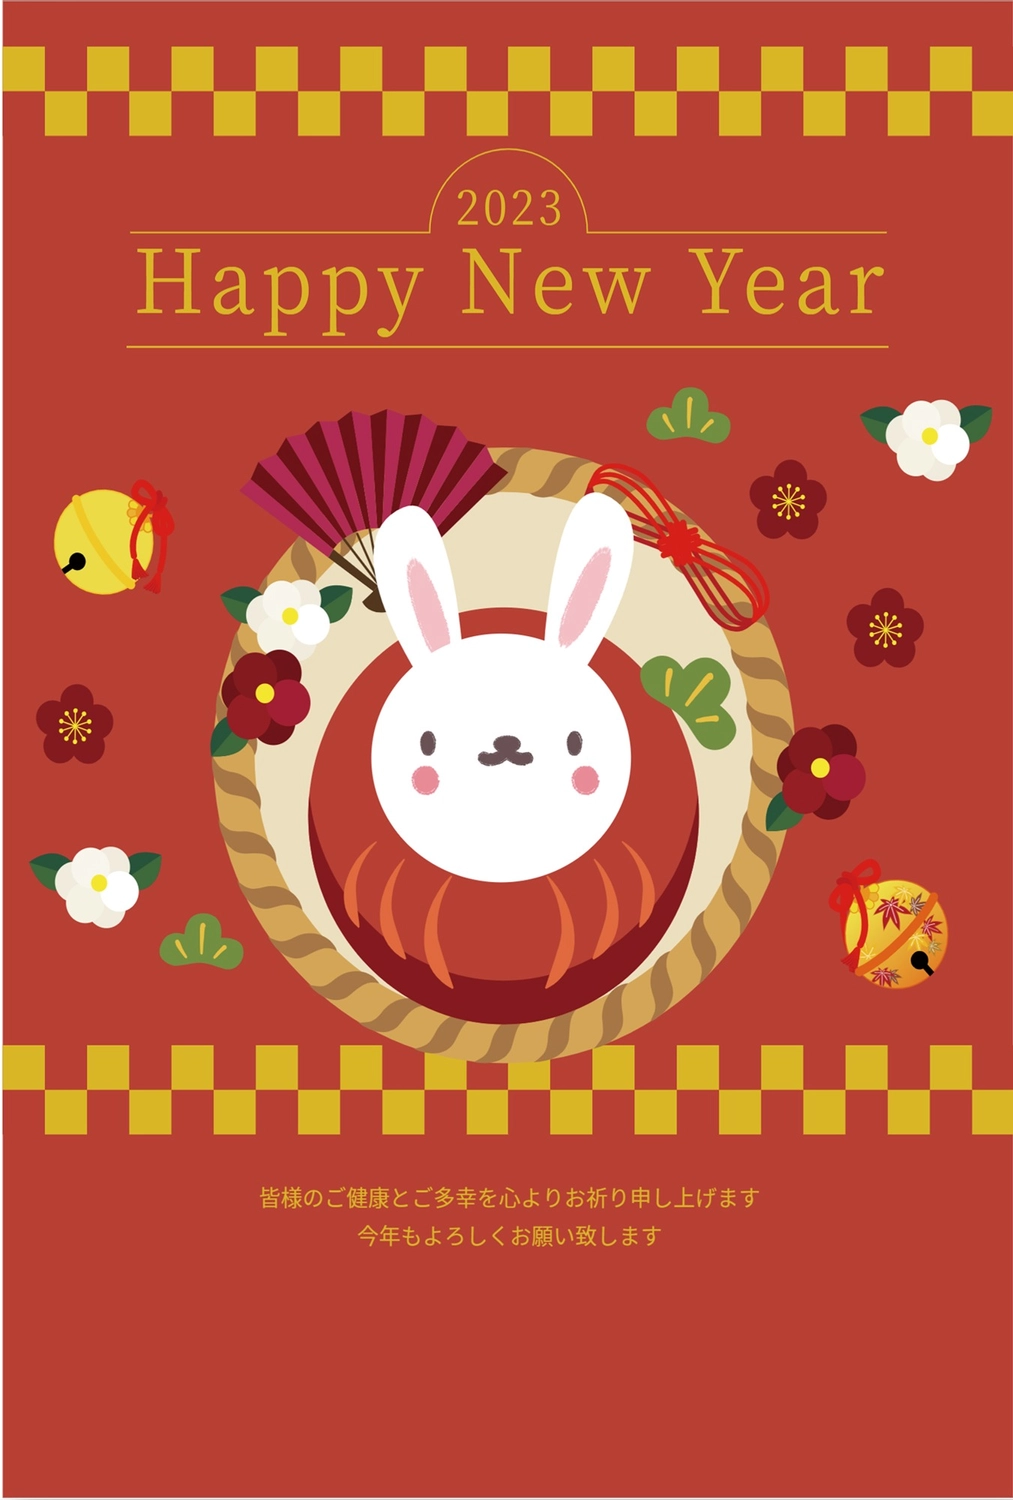 赤背景のうさぎだるま年賀状, dễ thương, 令和, Chúc mừng năm mới, Thiệp năm mới mẫu